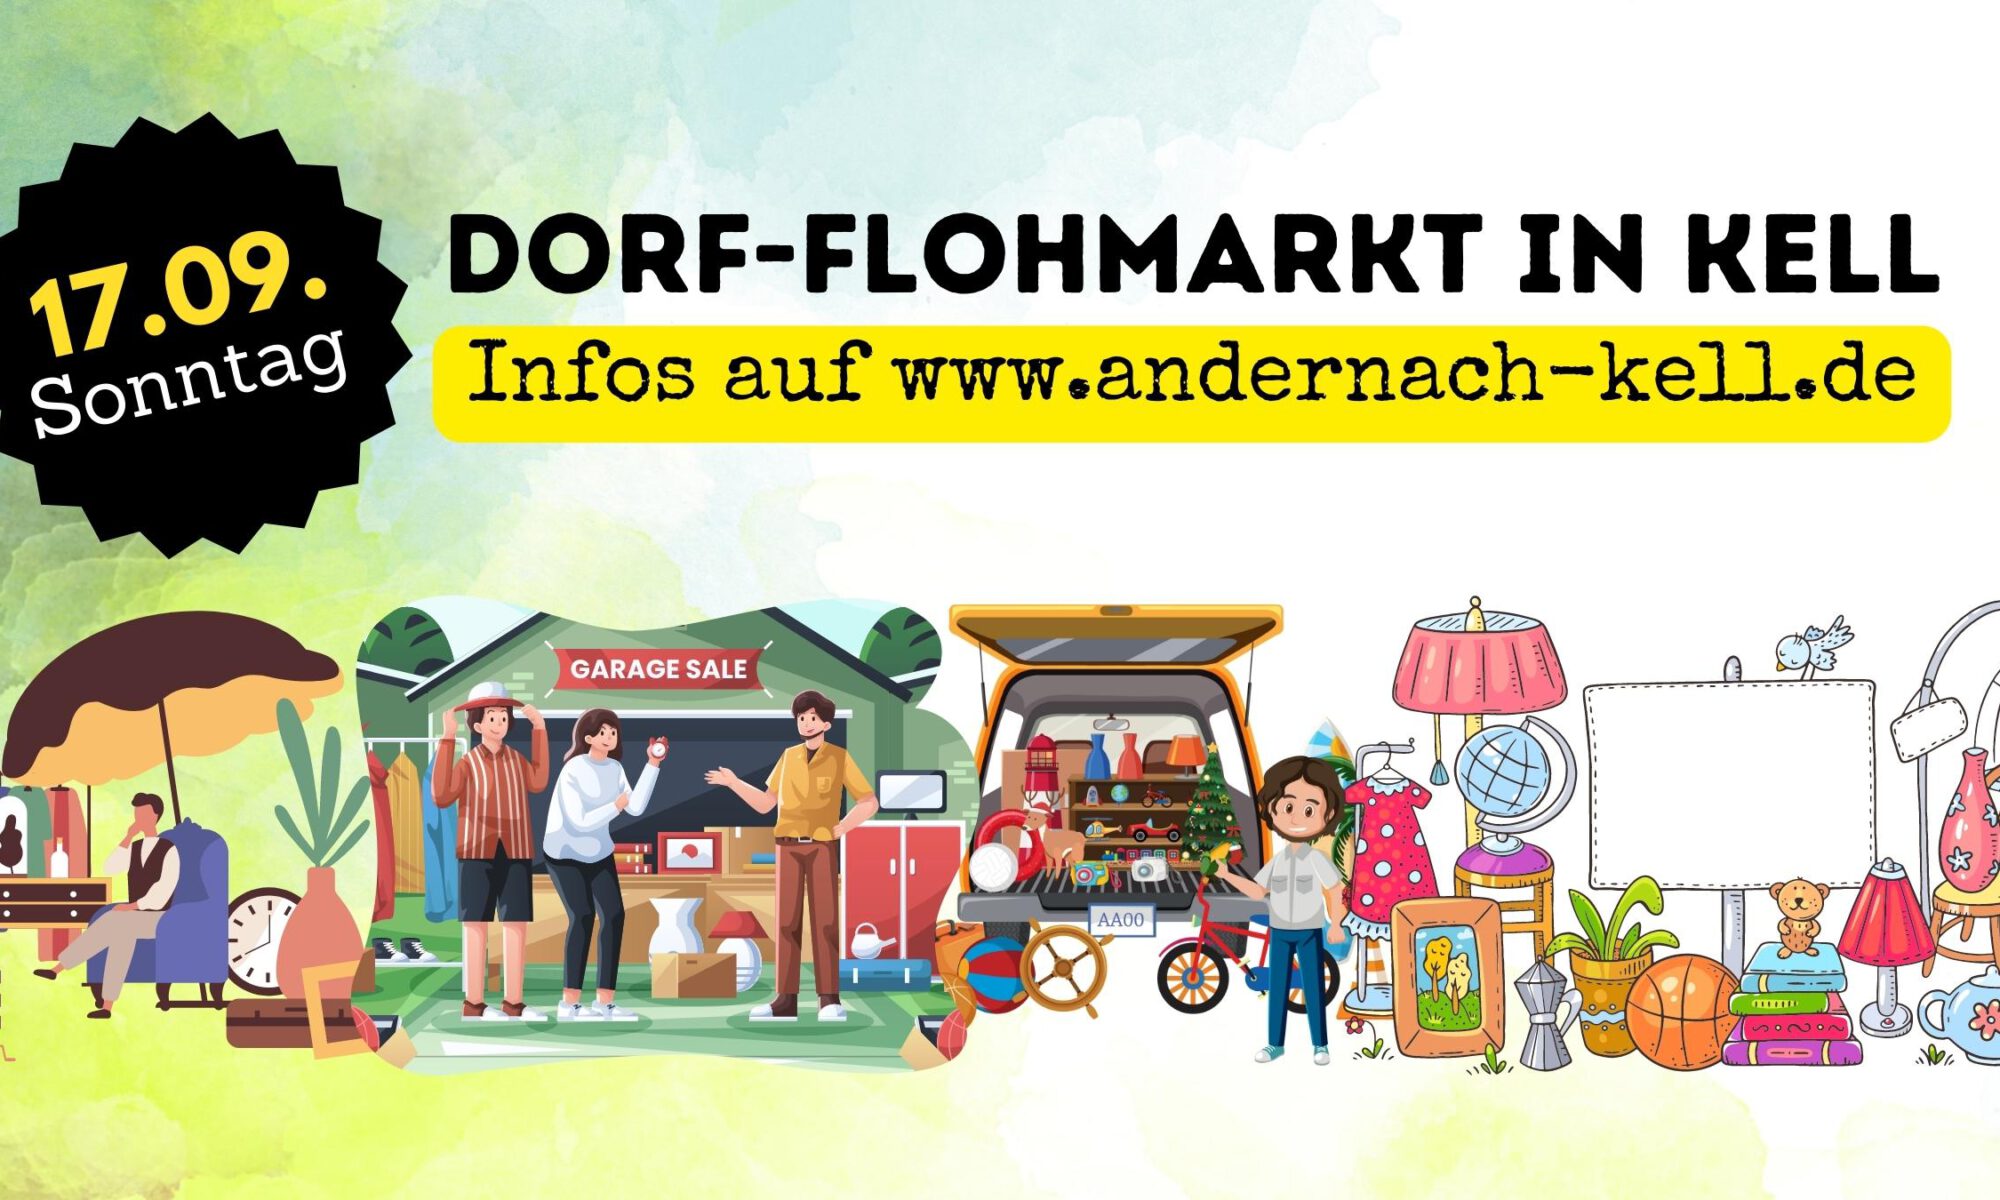 Veranstaltungsbanner Dorf-Flohmarkt Kell, mit Datum und Webadresse sowie vielen Abbildungen von Trödelständen